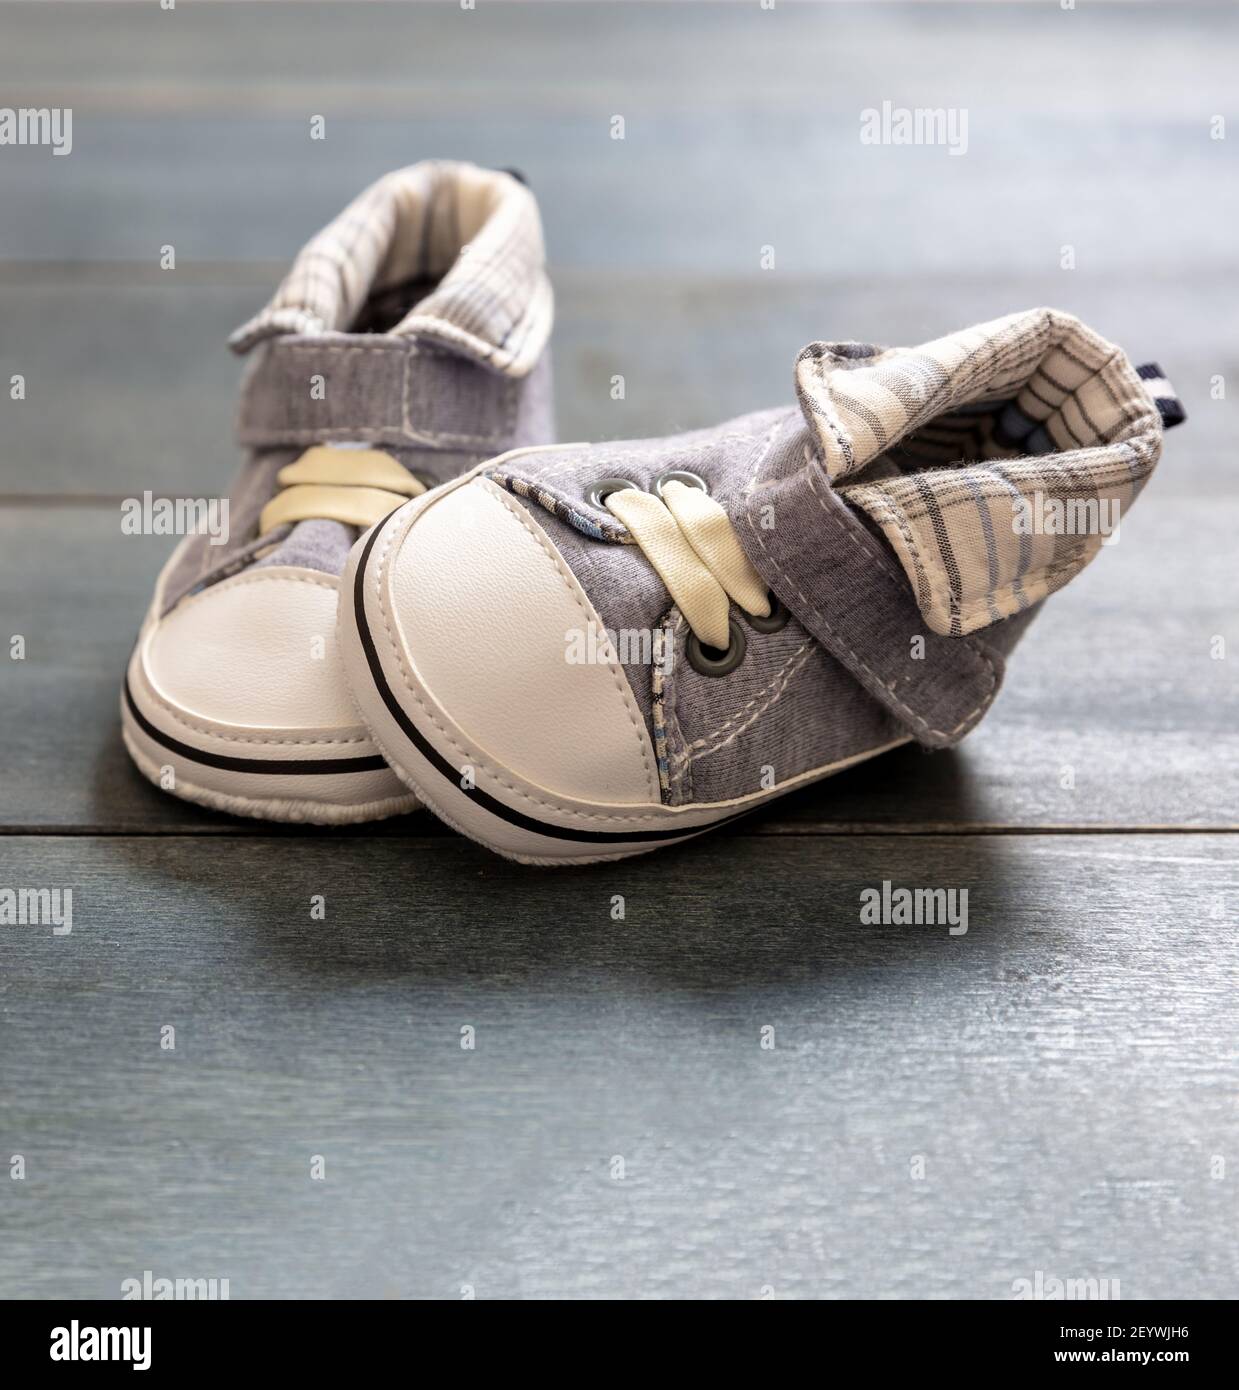 Zapatos suaves de bebé niño en el suelo de madera de color azul. Niño recién nacido tamaño pequeño azul botitas vista de primer plano. Primeros pasos Fotografía de stock -